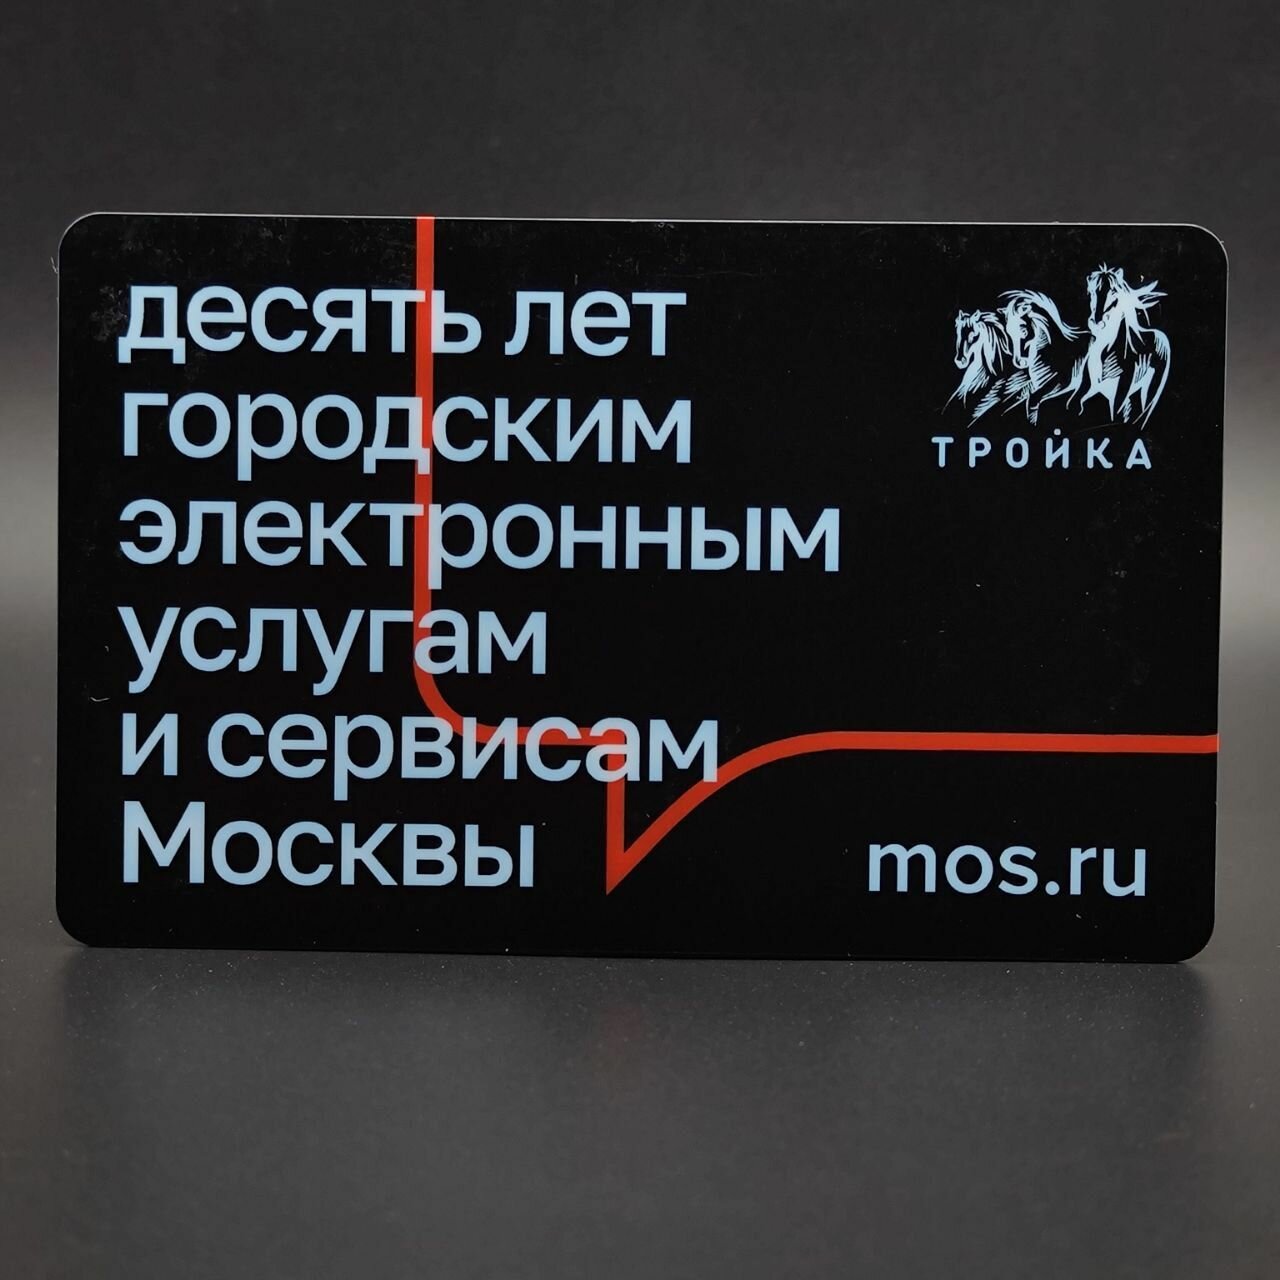 Транспортная карта метро Тройка - 10 лет городским электронным услугам и сервисам Москвы. Госуслуги 2021 (чёрная)